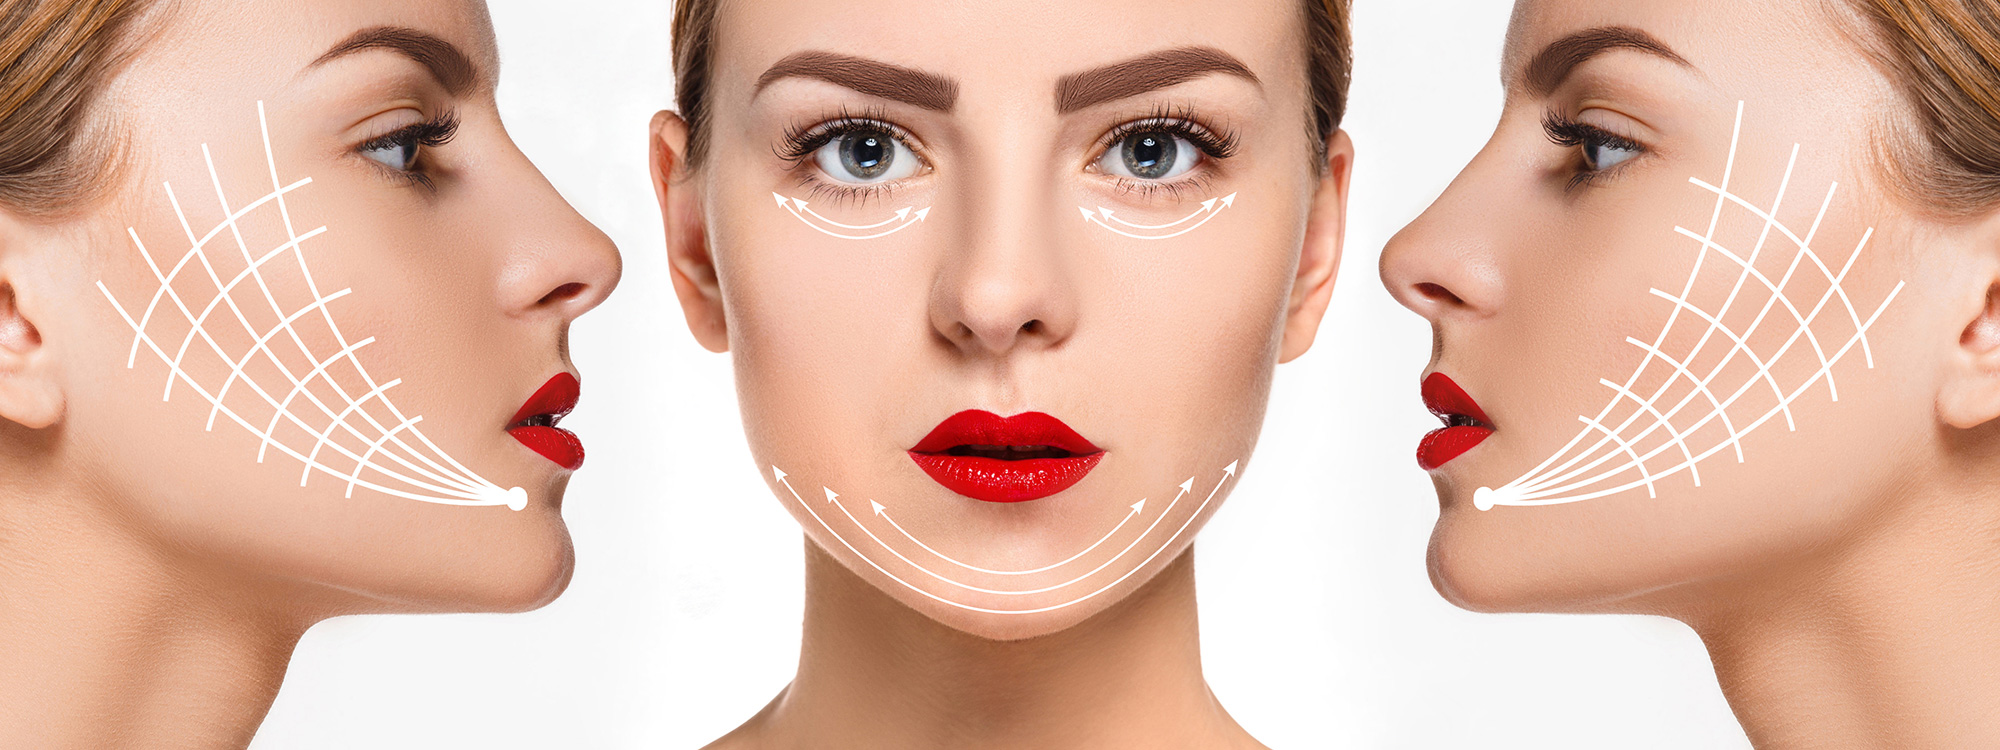 Căng da mặt bằng chỉ collagen – phương pháp làm đẹp sử dụng chỉ sinh học để gây phản ứng viêm tại chỗ